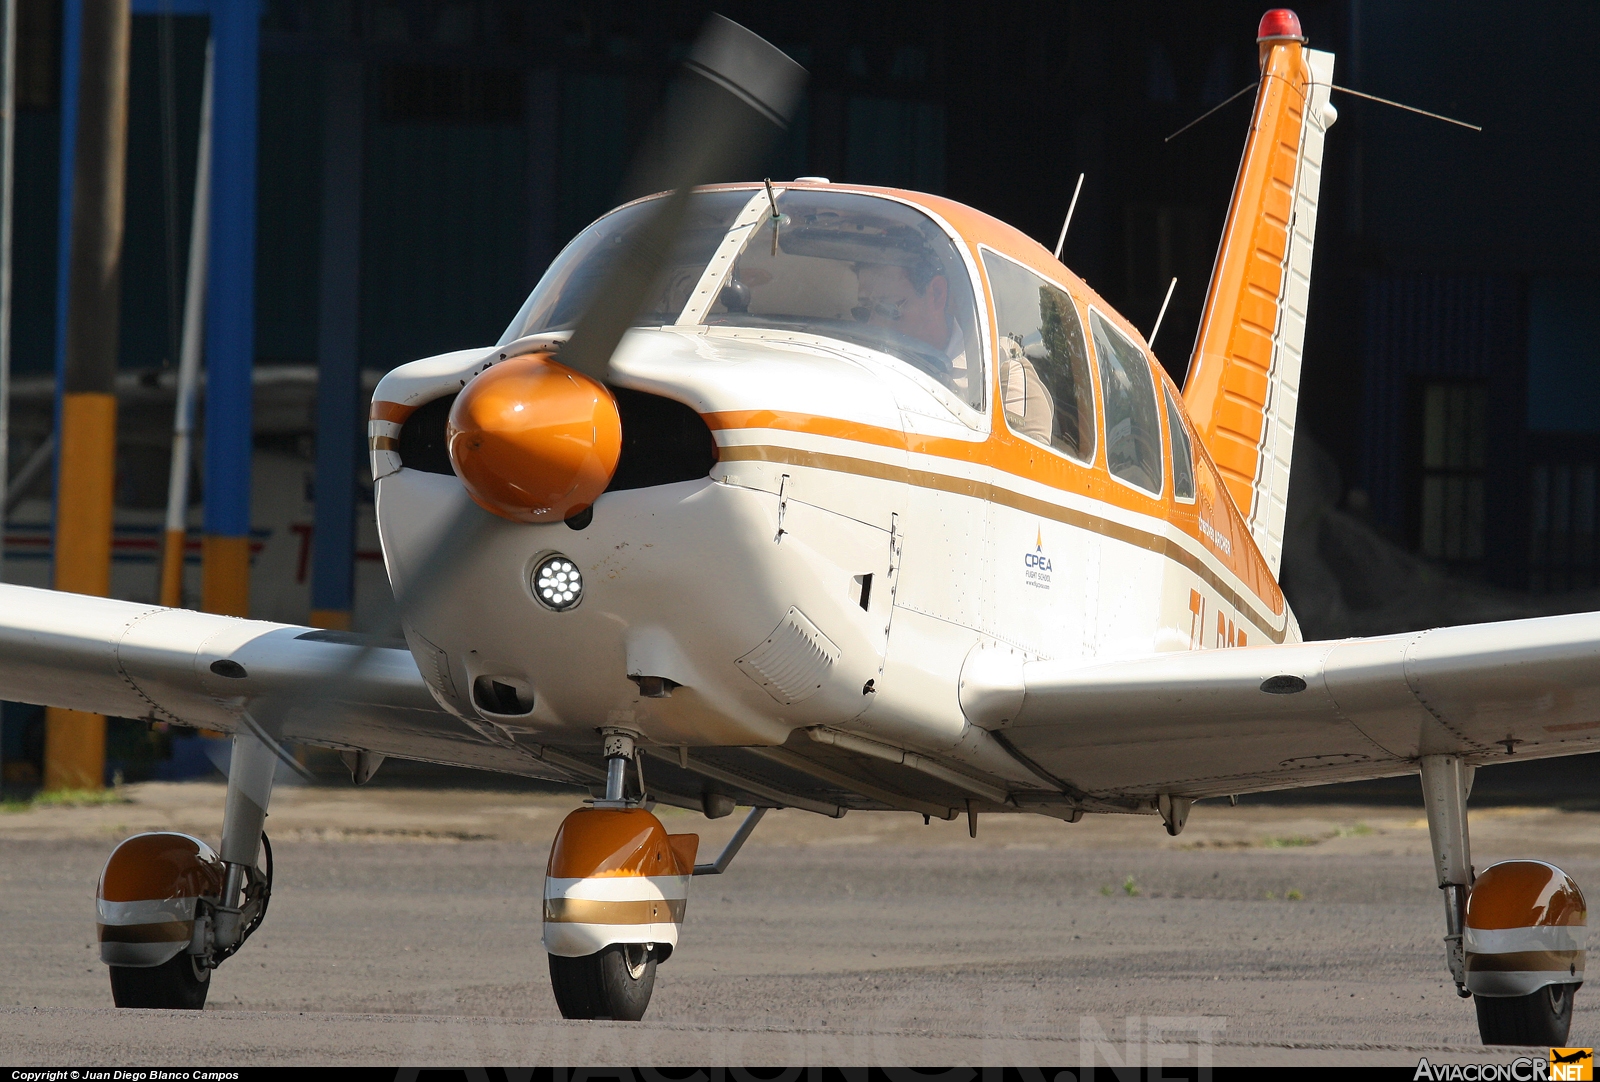 TI-BDT - Piper PA28-181 Archer II - CPEA - Escuela de Aviación